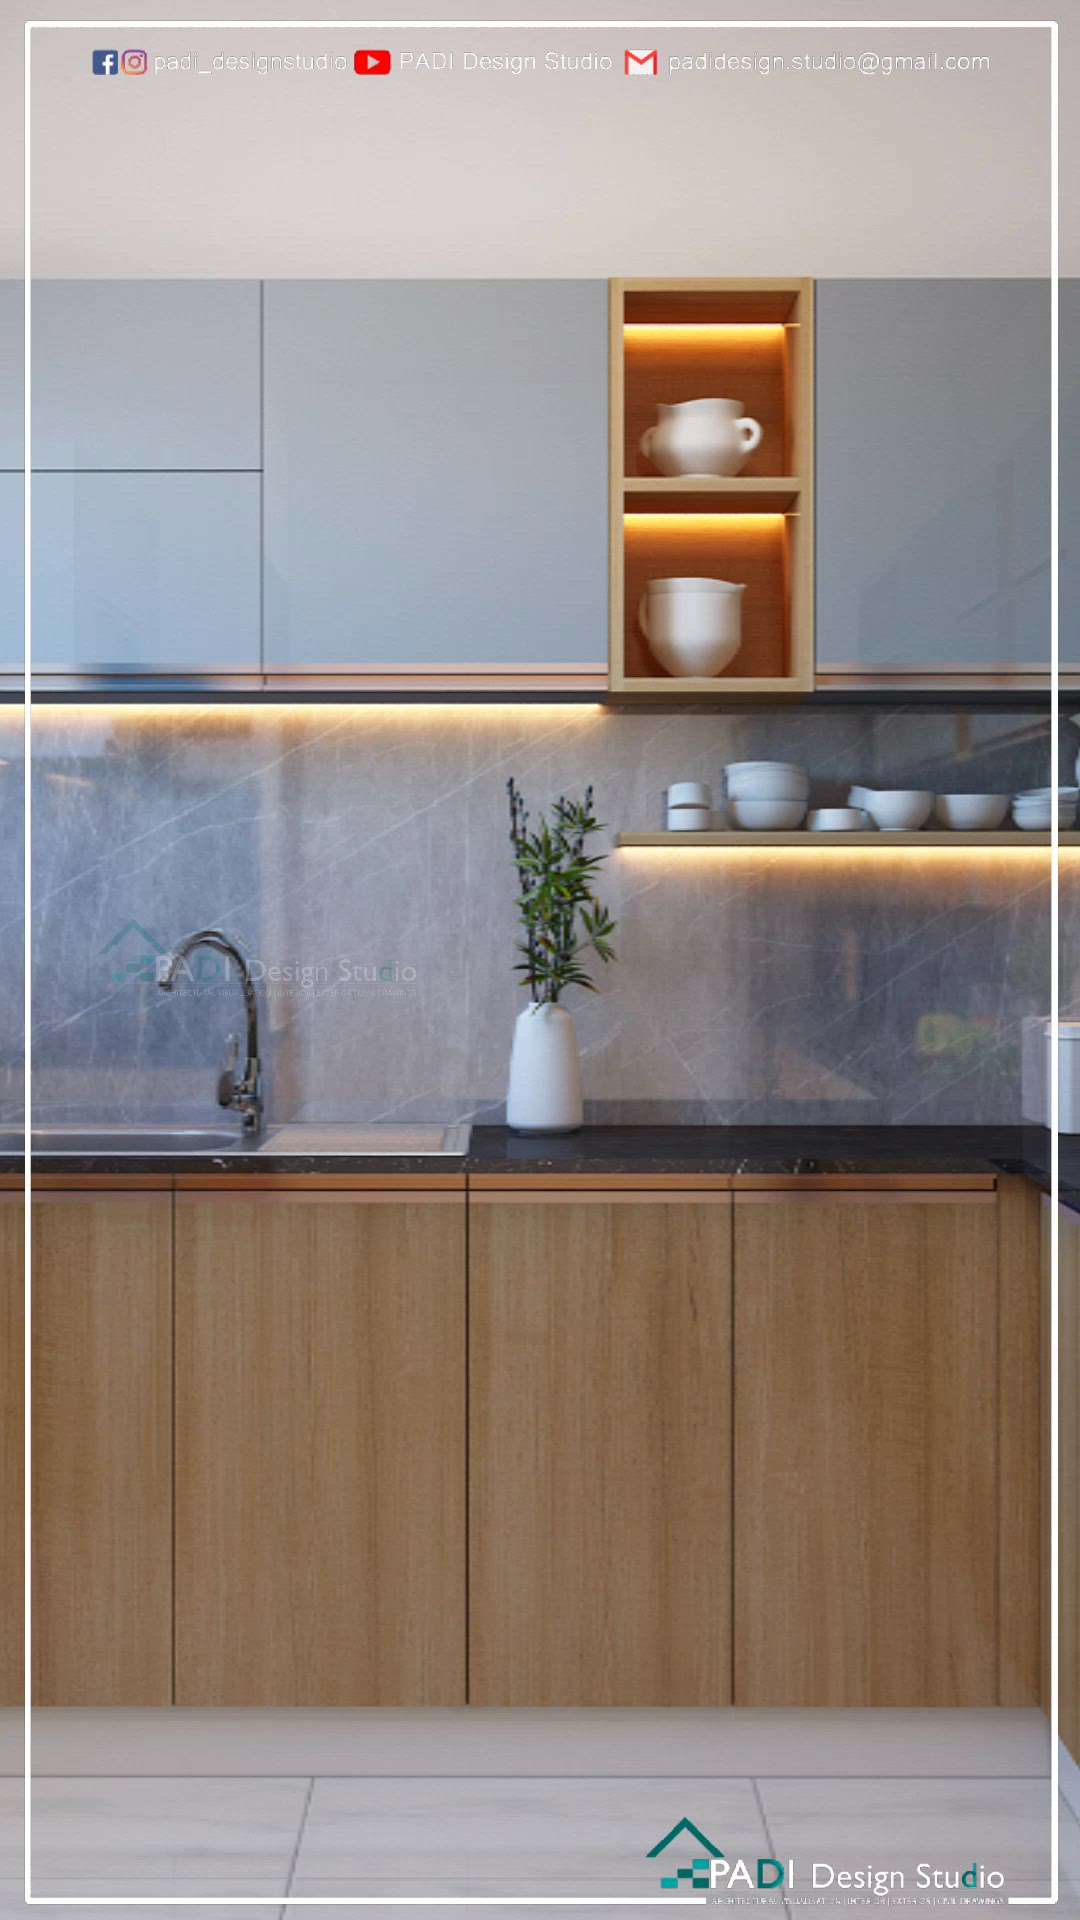 Modular Kitchen Design #InteriorDesigner  #ModularKitchen #homeinteriordesign #kitchenrender #Render #kitchen3d #3D #keralakitchen #kitchen #KitchenDesigns